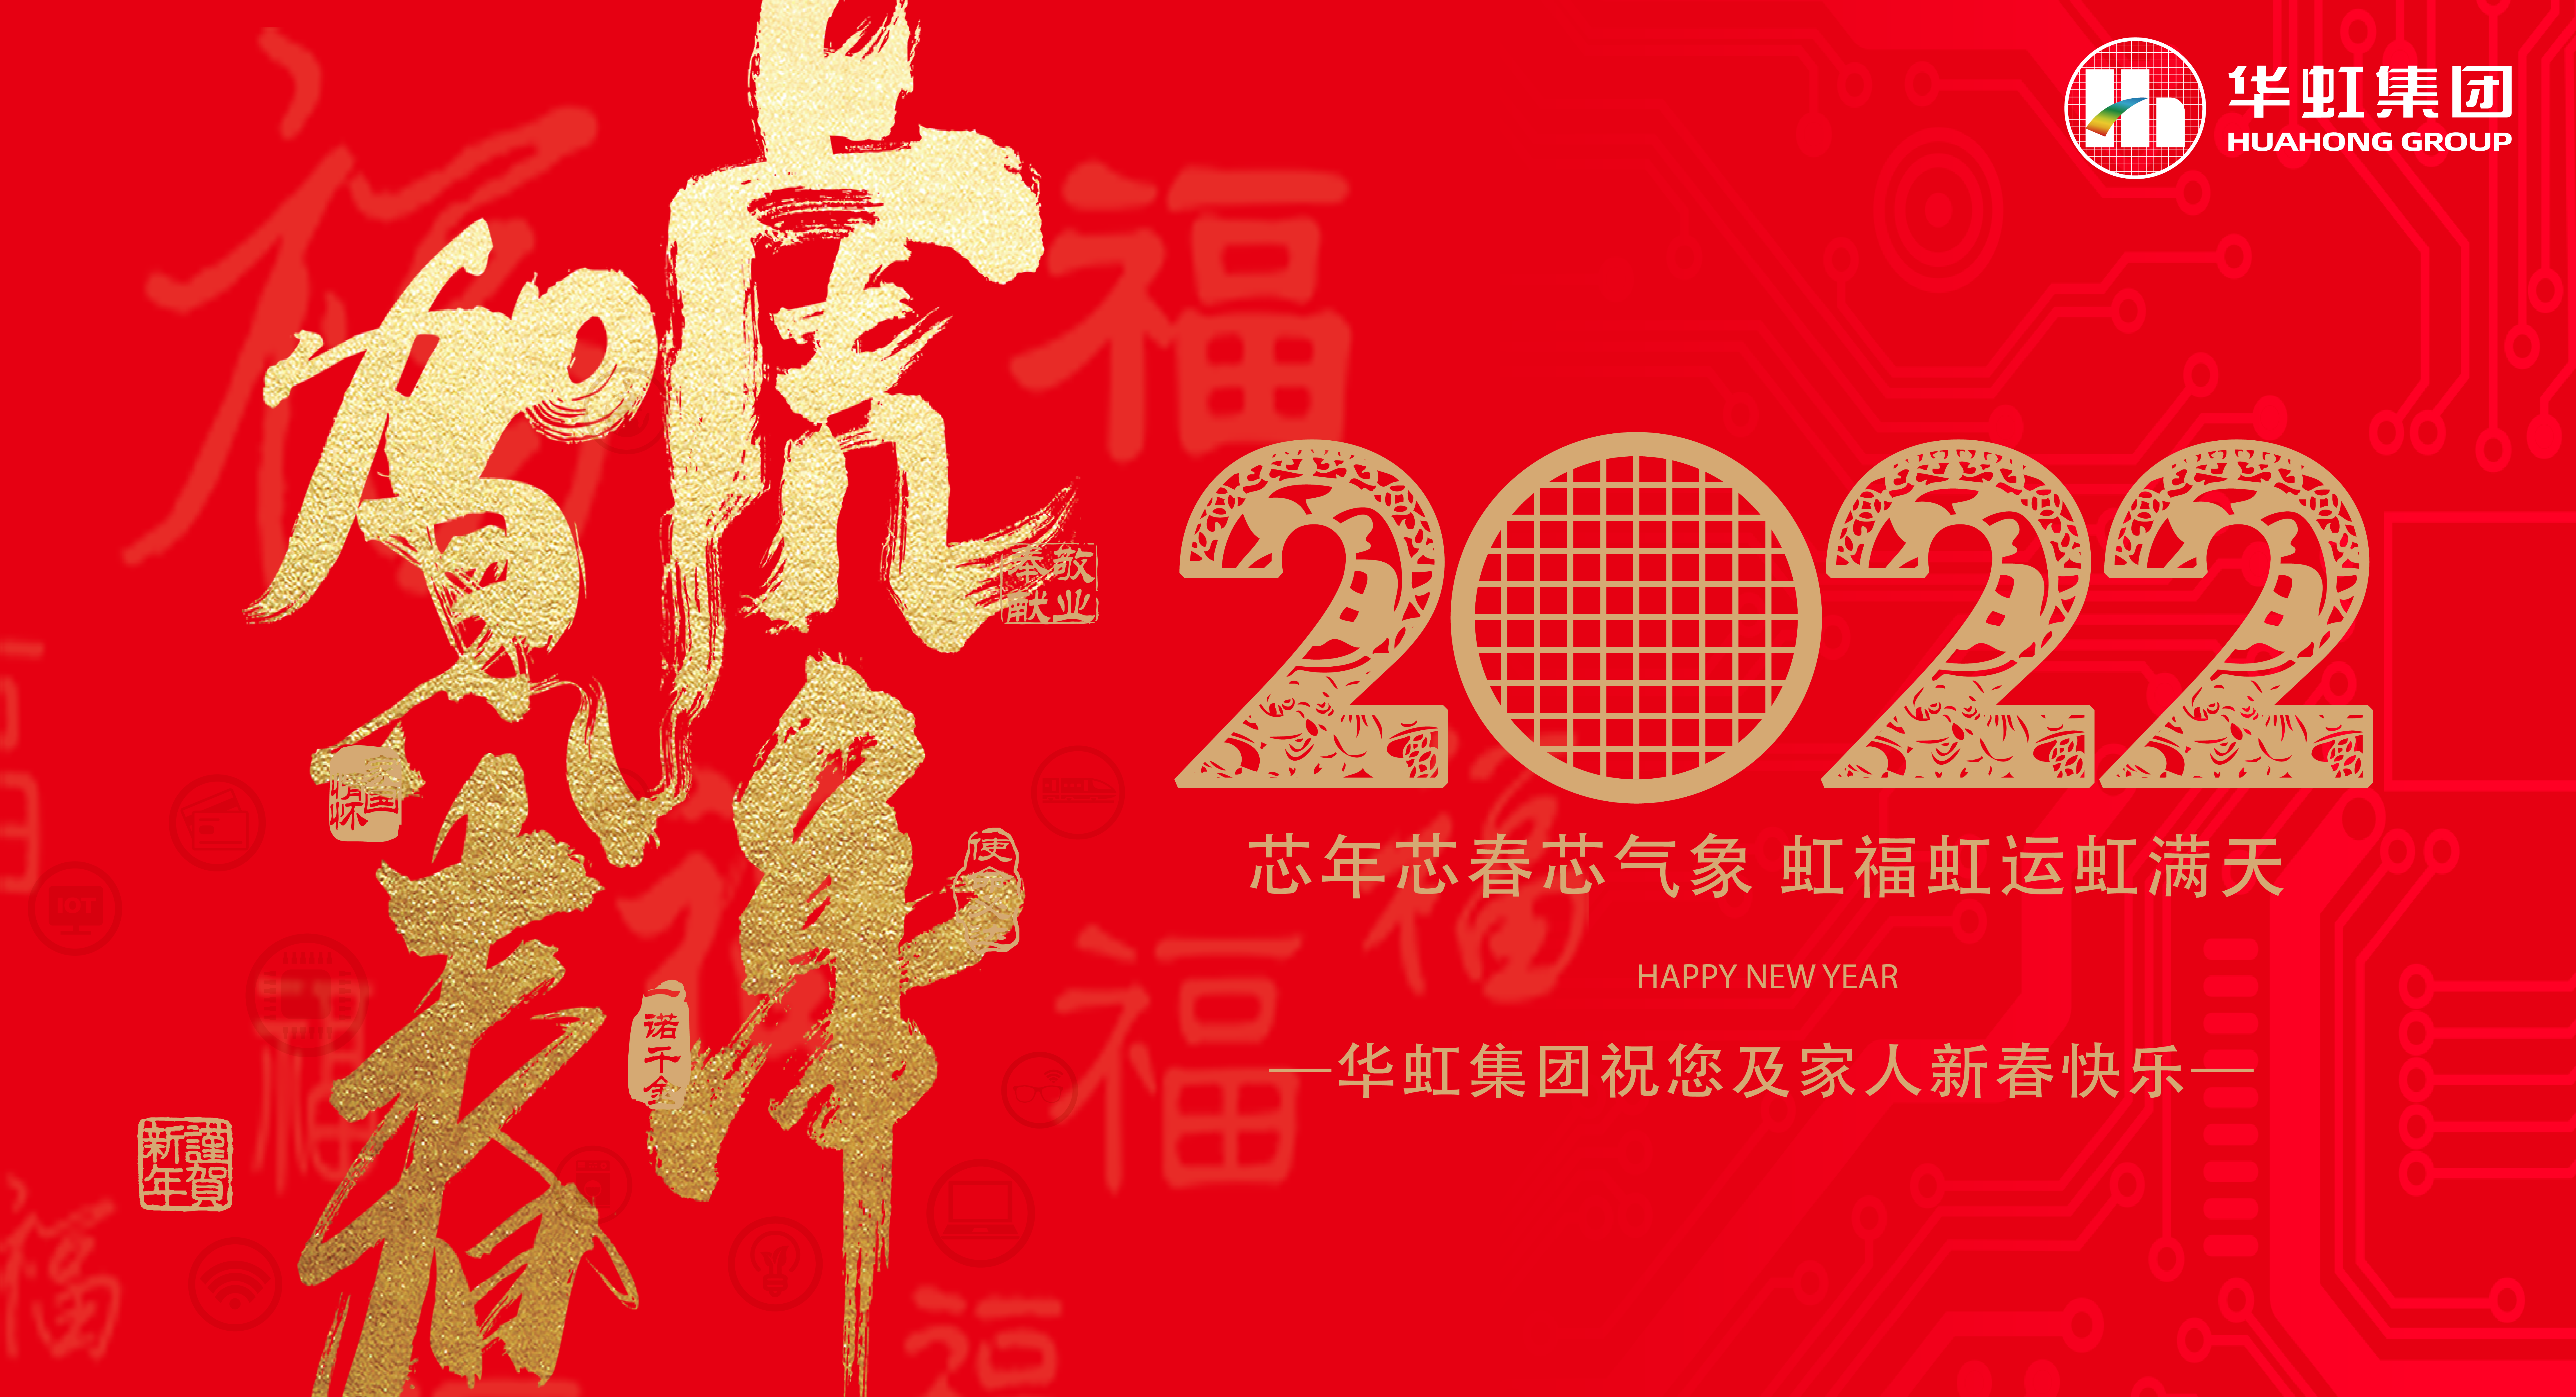 环球体育平台(中国大陆)官方网站祝您及家人新春快乐